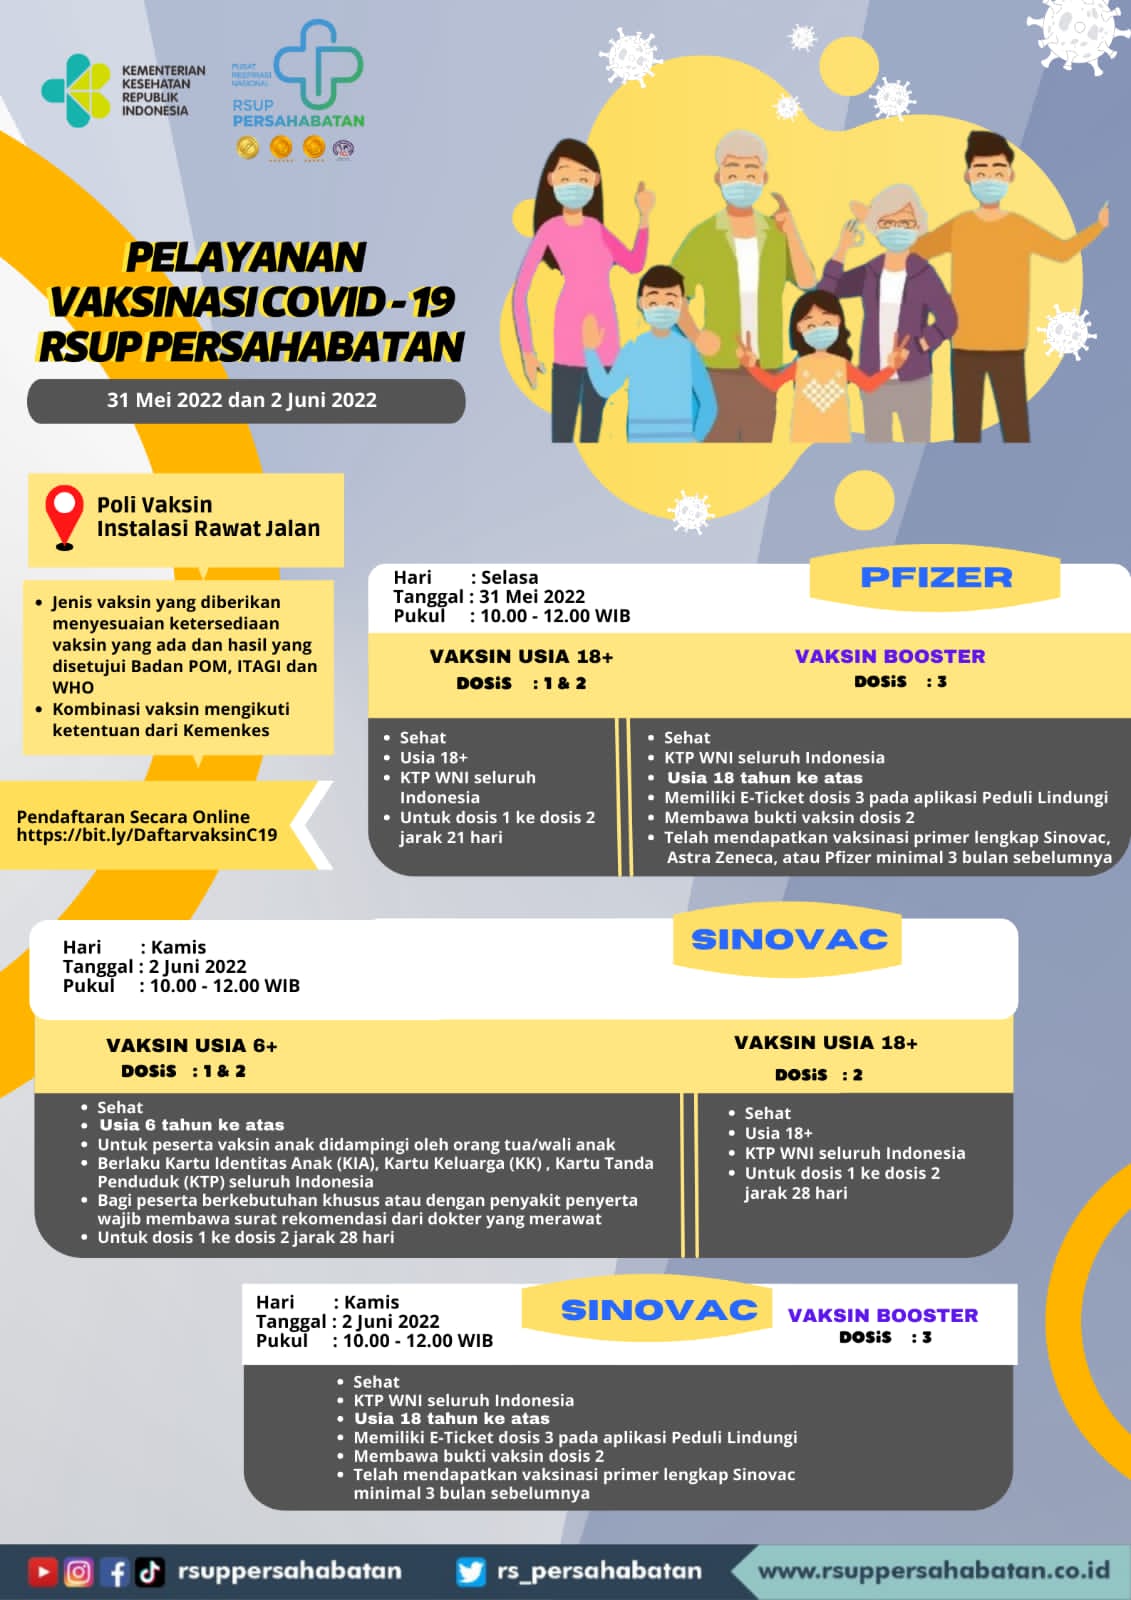 Pelayanan Vaksinasi Covid 19 di RSUP Persahabatan pfizer, sinovac